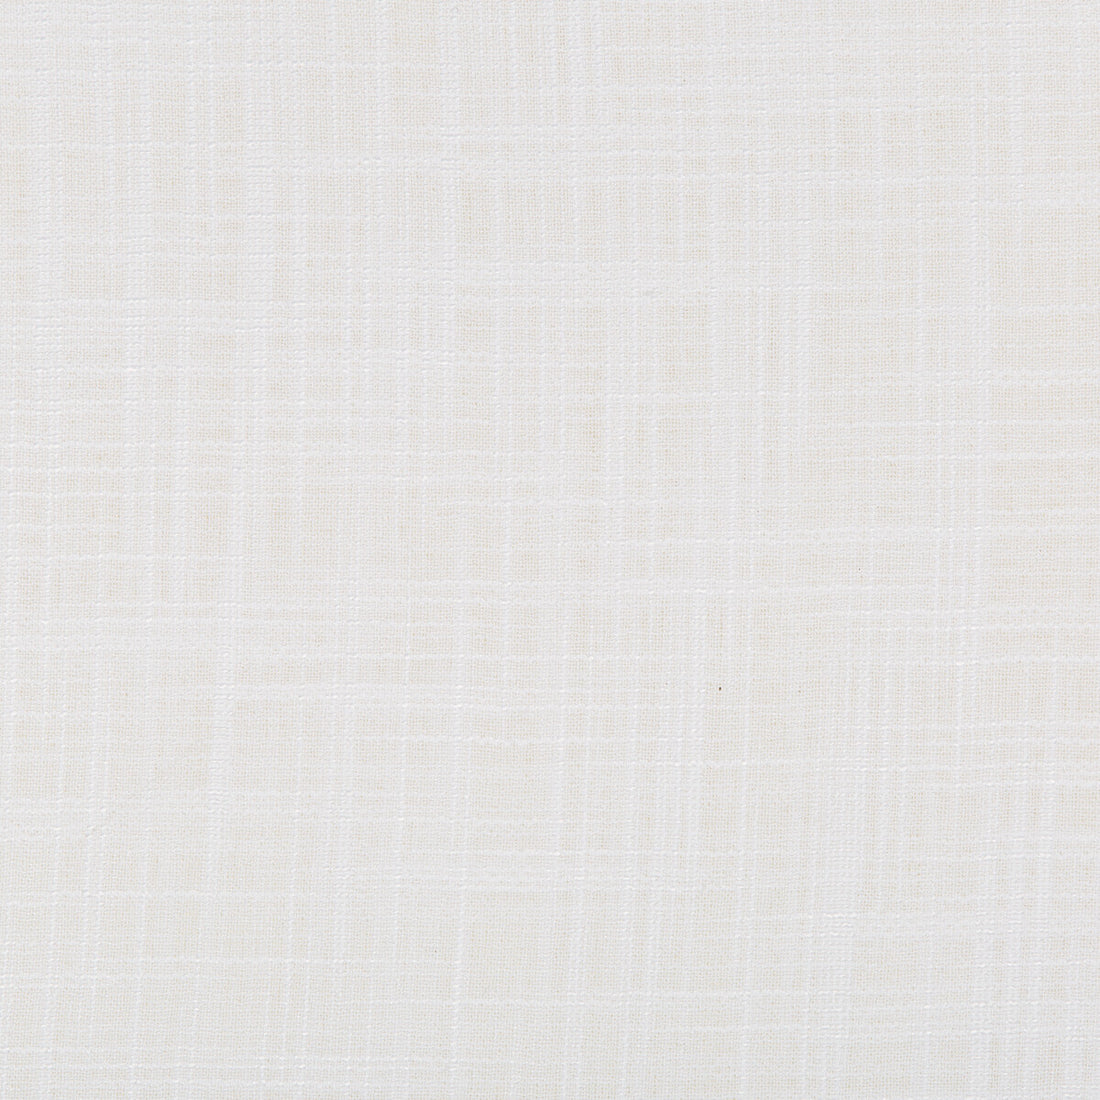 Kravet Basics fabric in 4674-101 color - pattern 4674.101.0 - by Kravet Basics